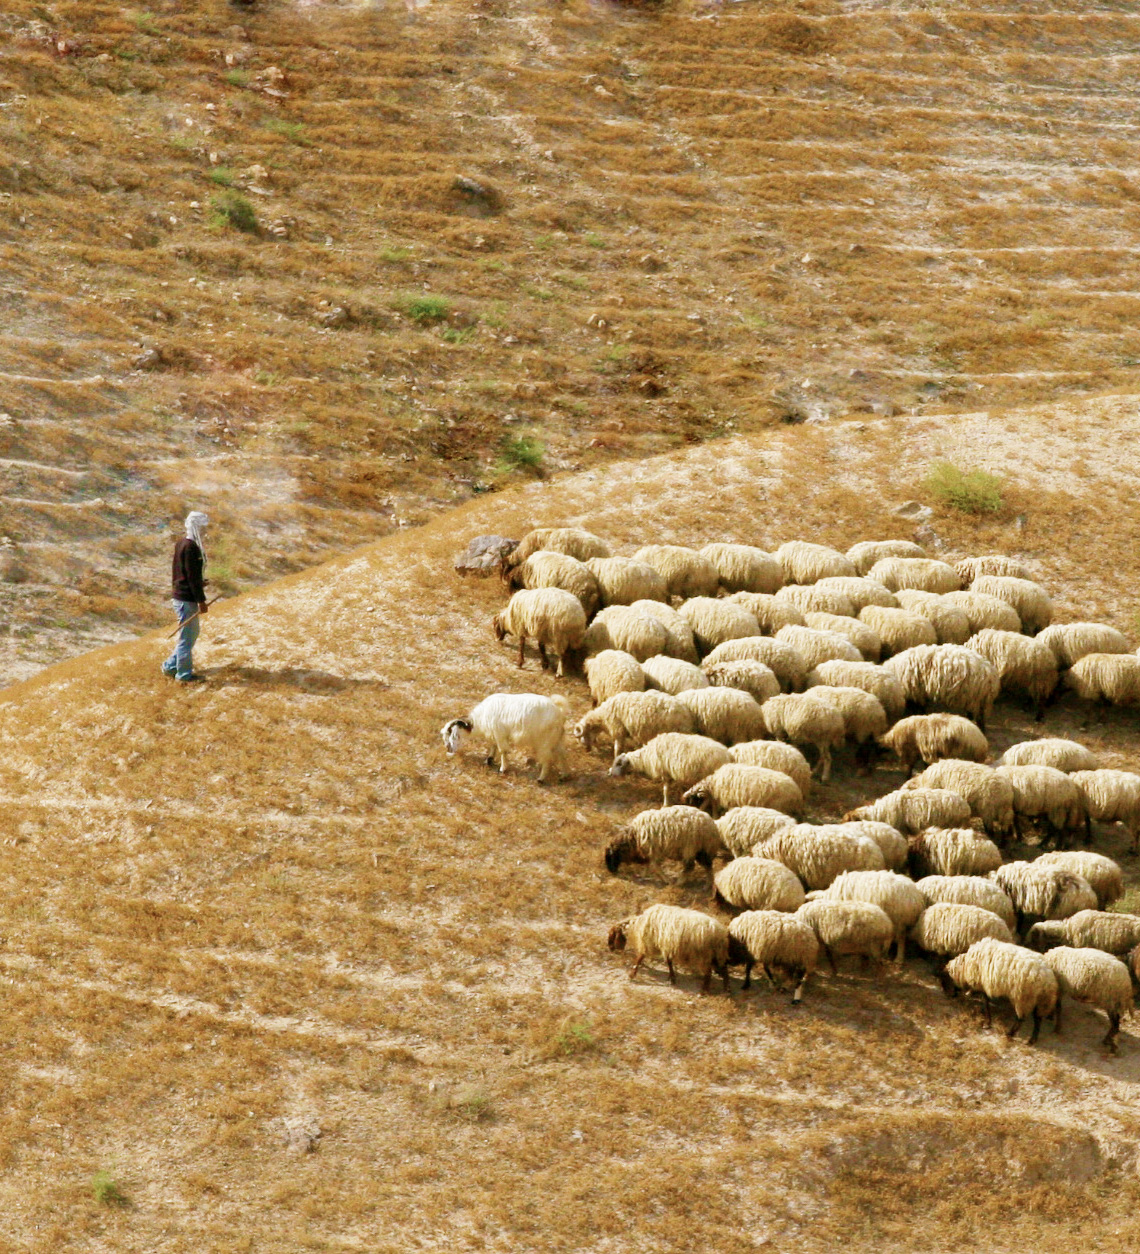 Good Shepherd by Rosa Tse